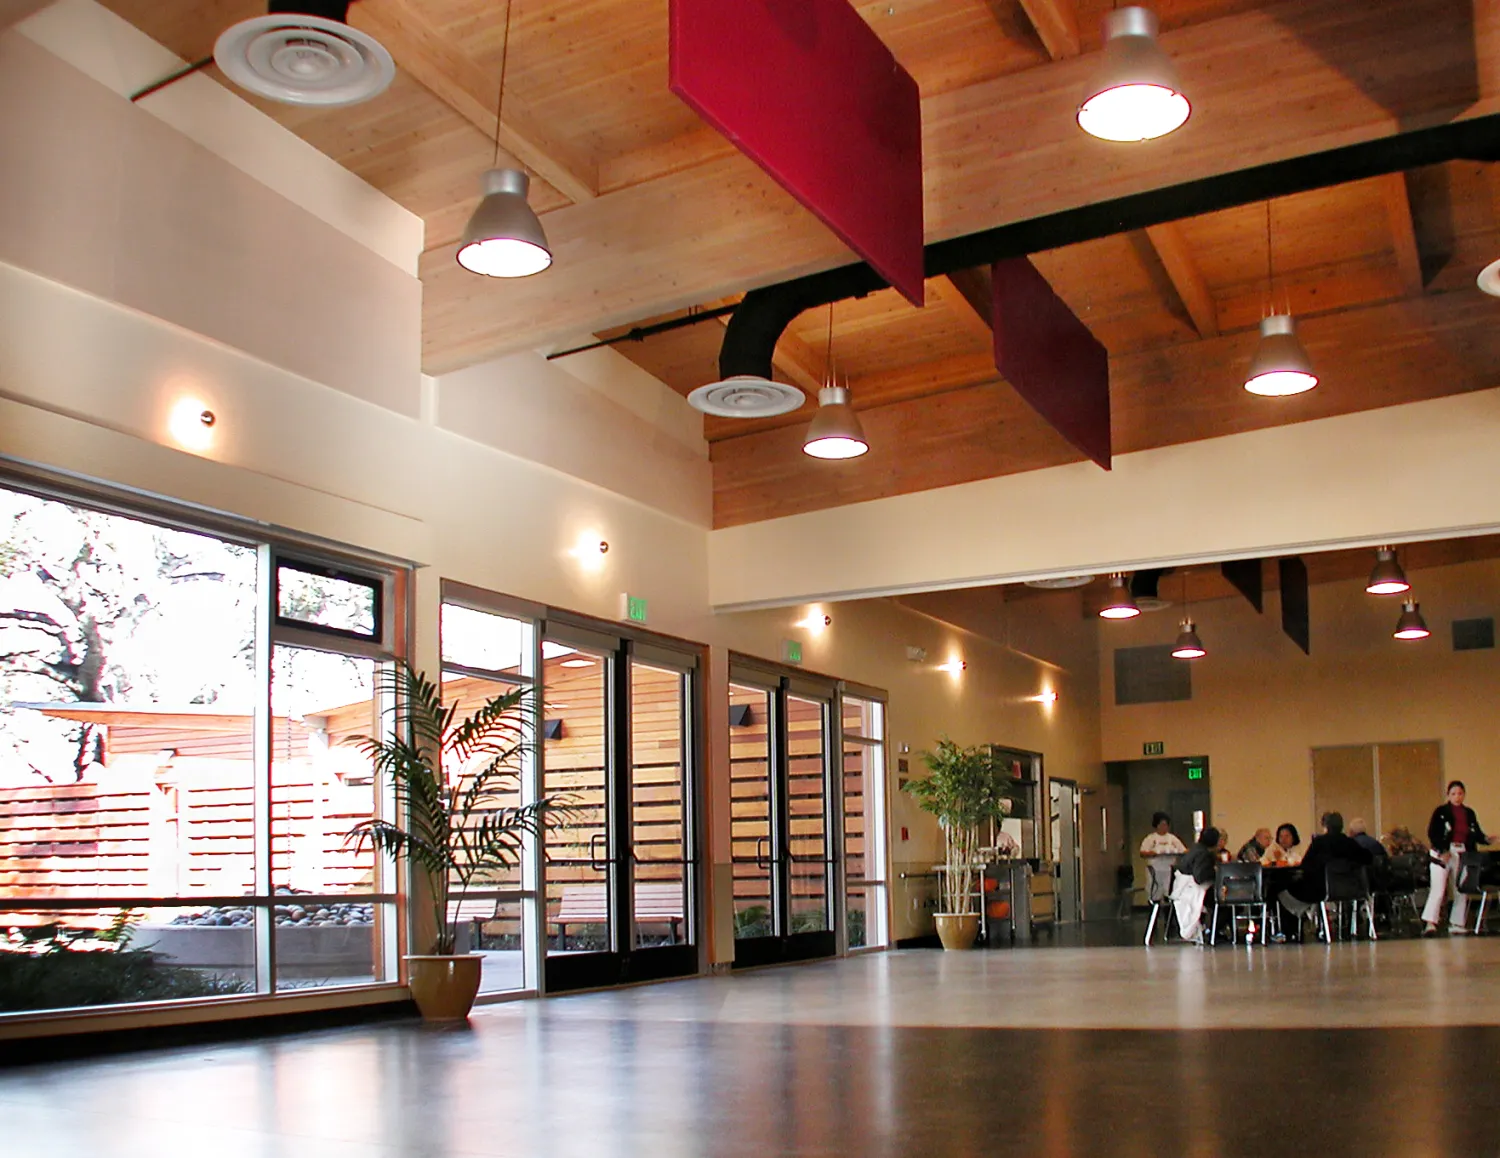 Interior of the community auditorium at Northside Community Center in San Jose, California.